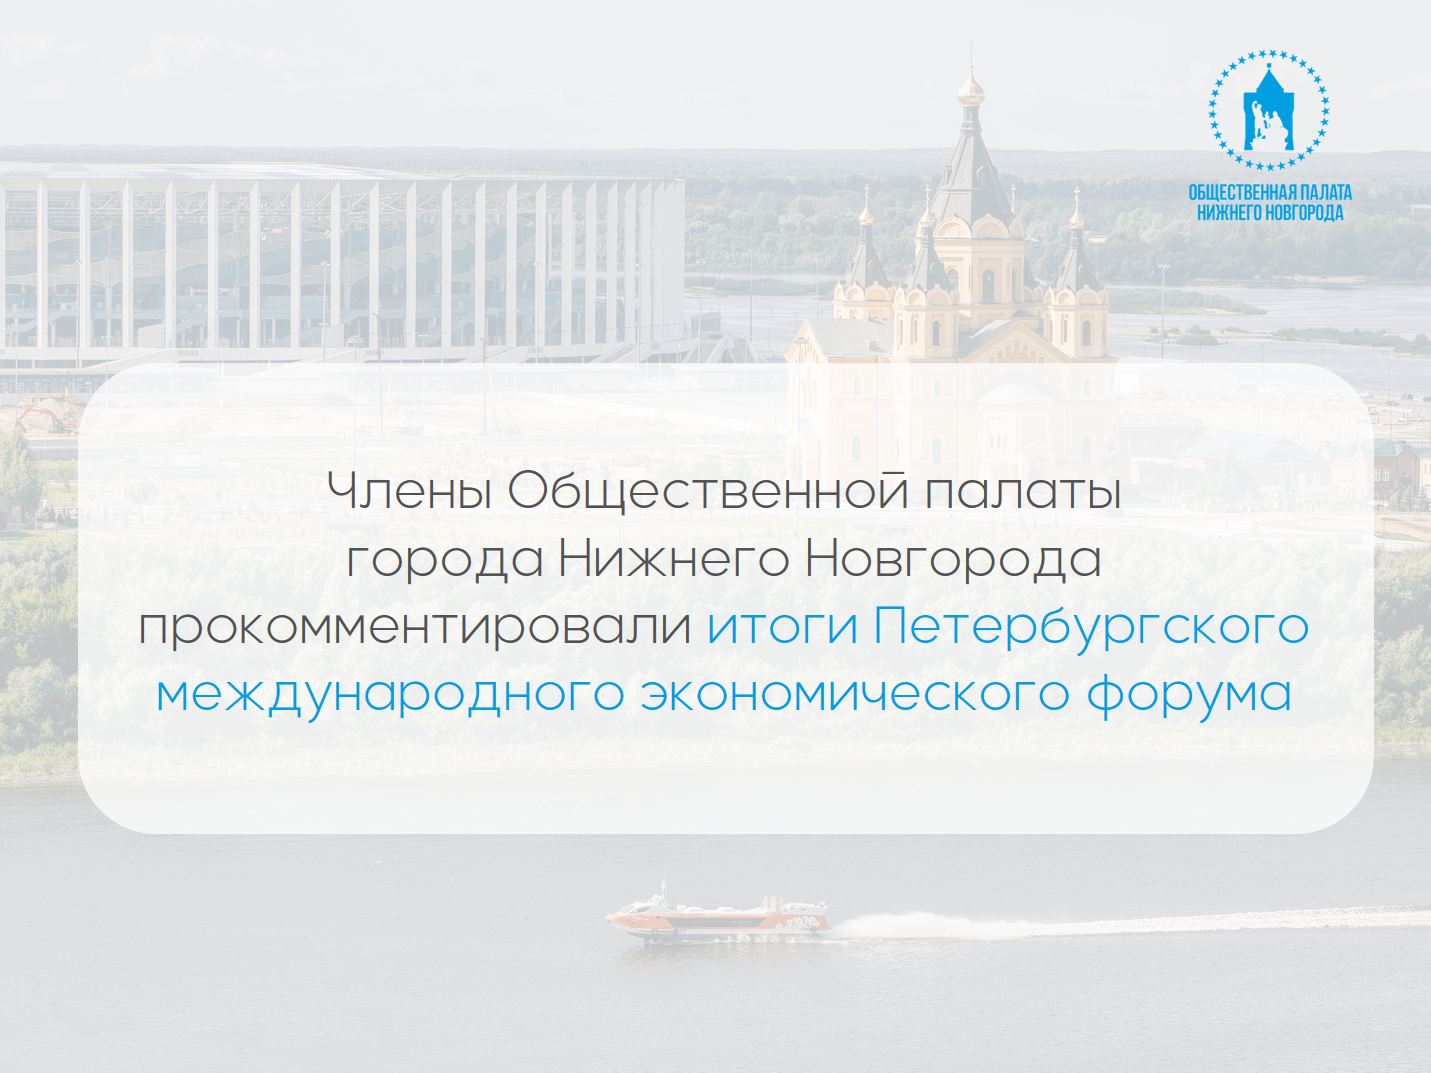 Члены Общественной палаты Нижнего Новгорода об итогах Петербургского международного экономического форума